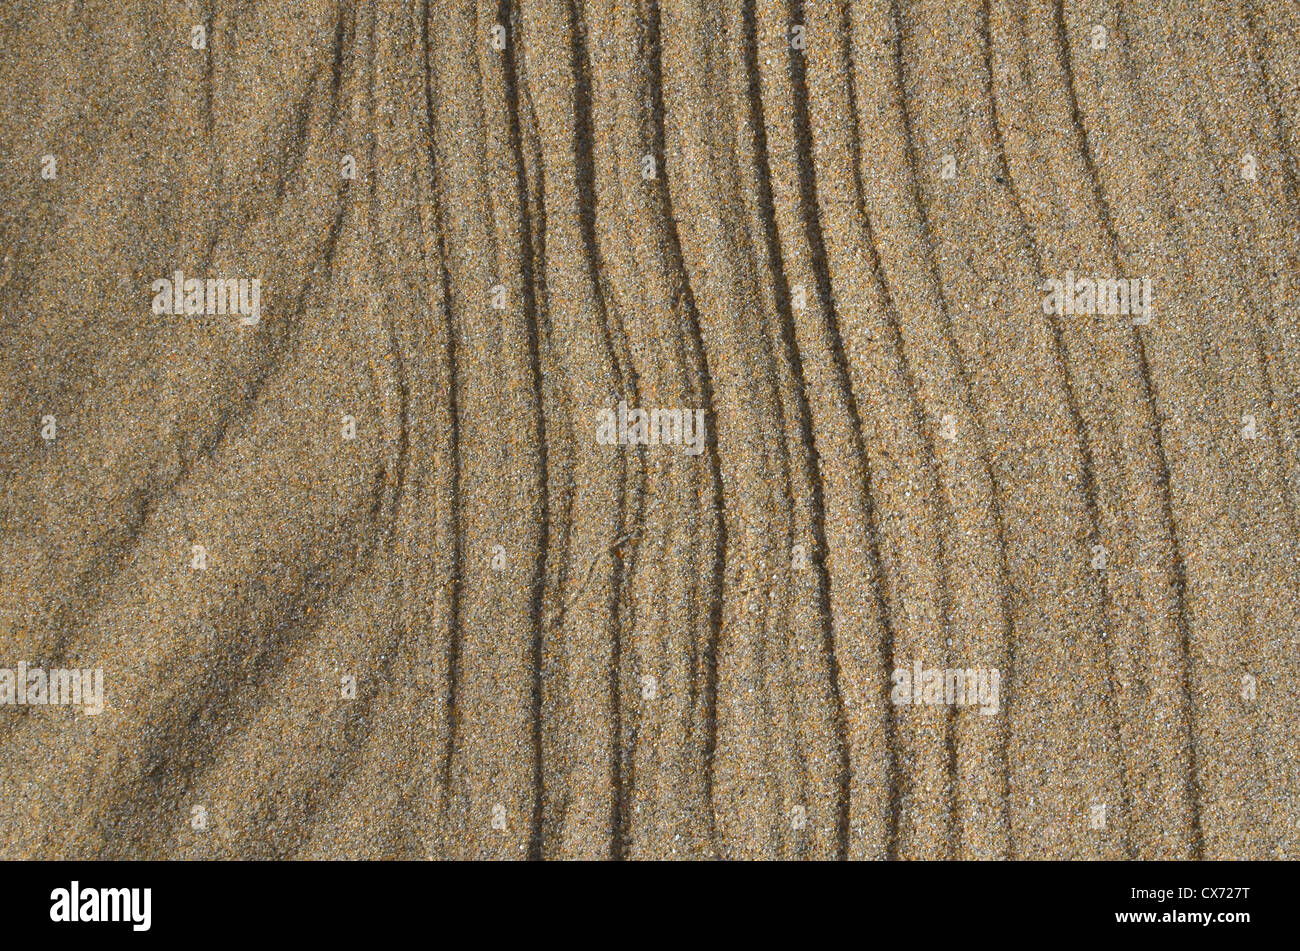 La plage de sable sur ridée / rivage après vague vient de se replier. Broad Oak beach, Cornwall. Mars-comme concept flux granulaire. Banque D'Images